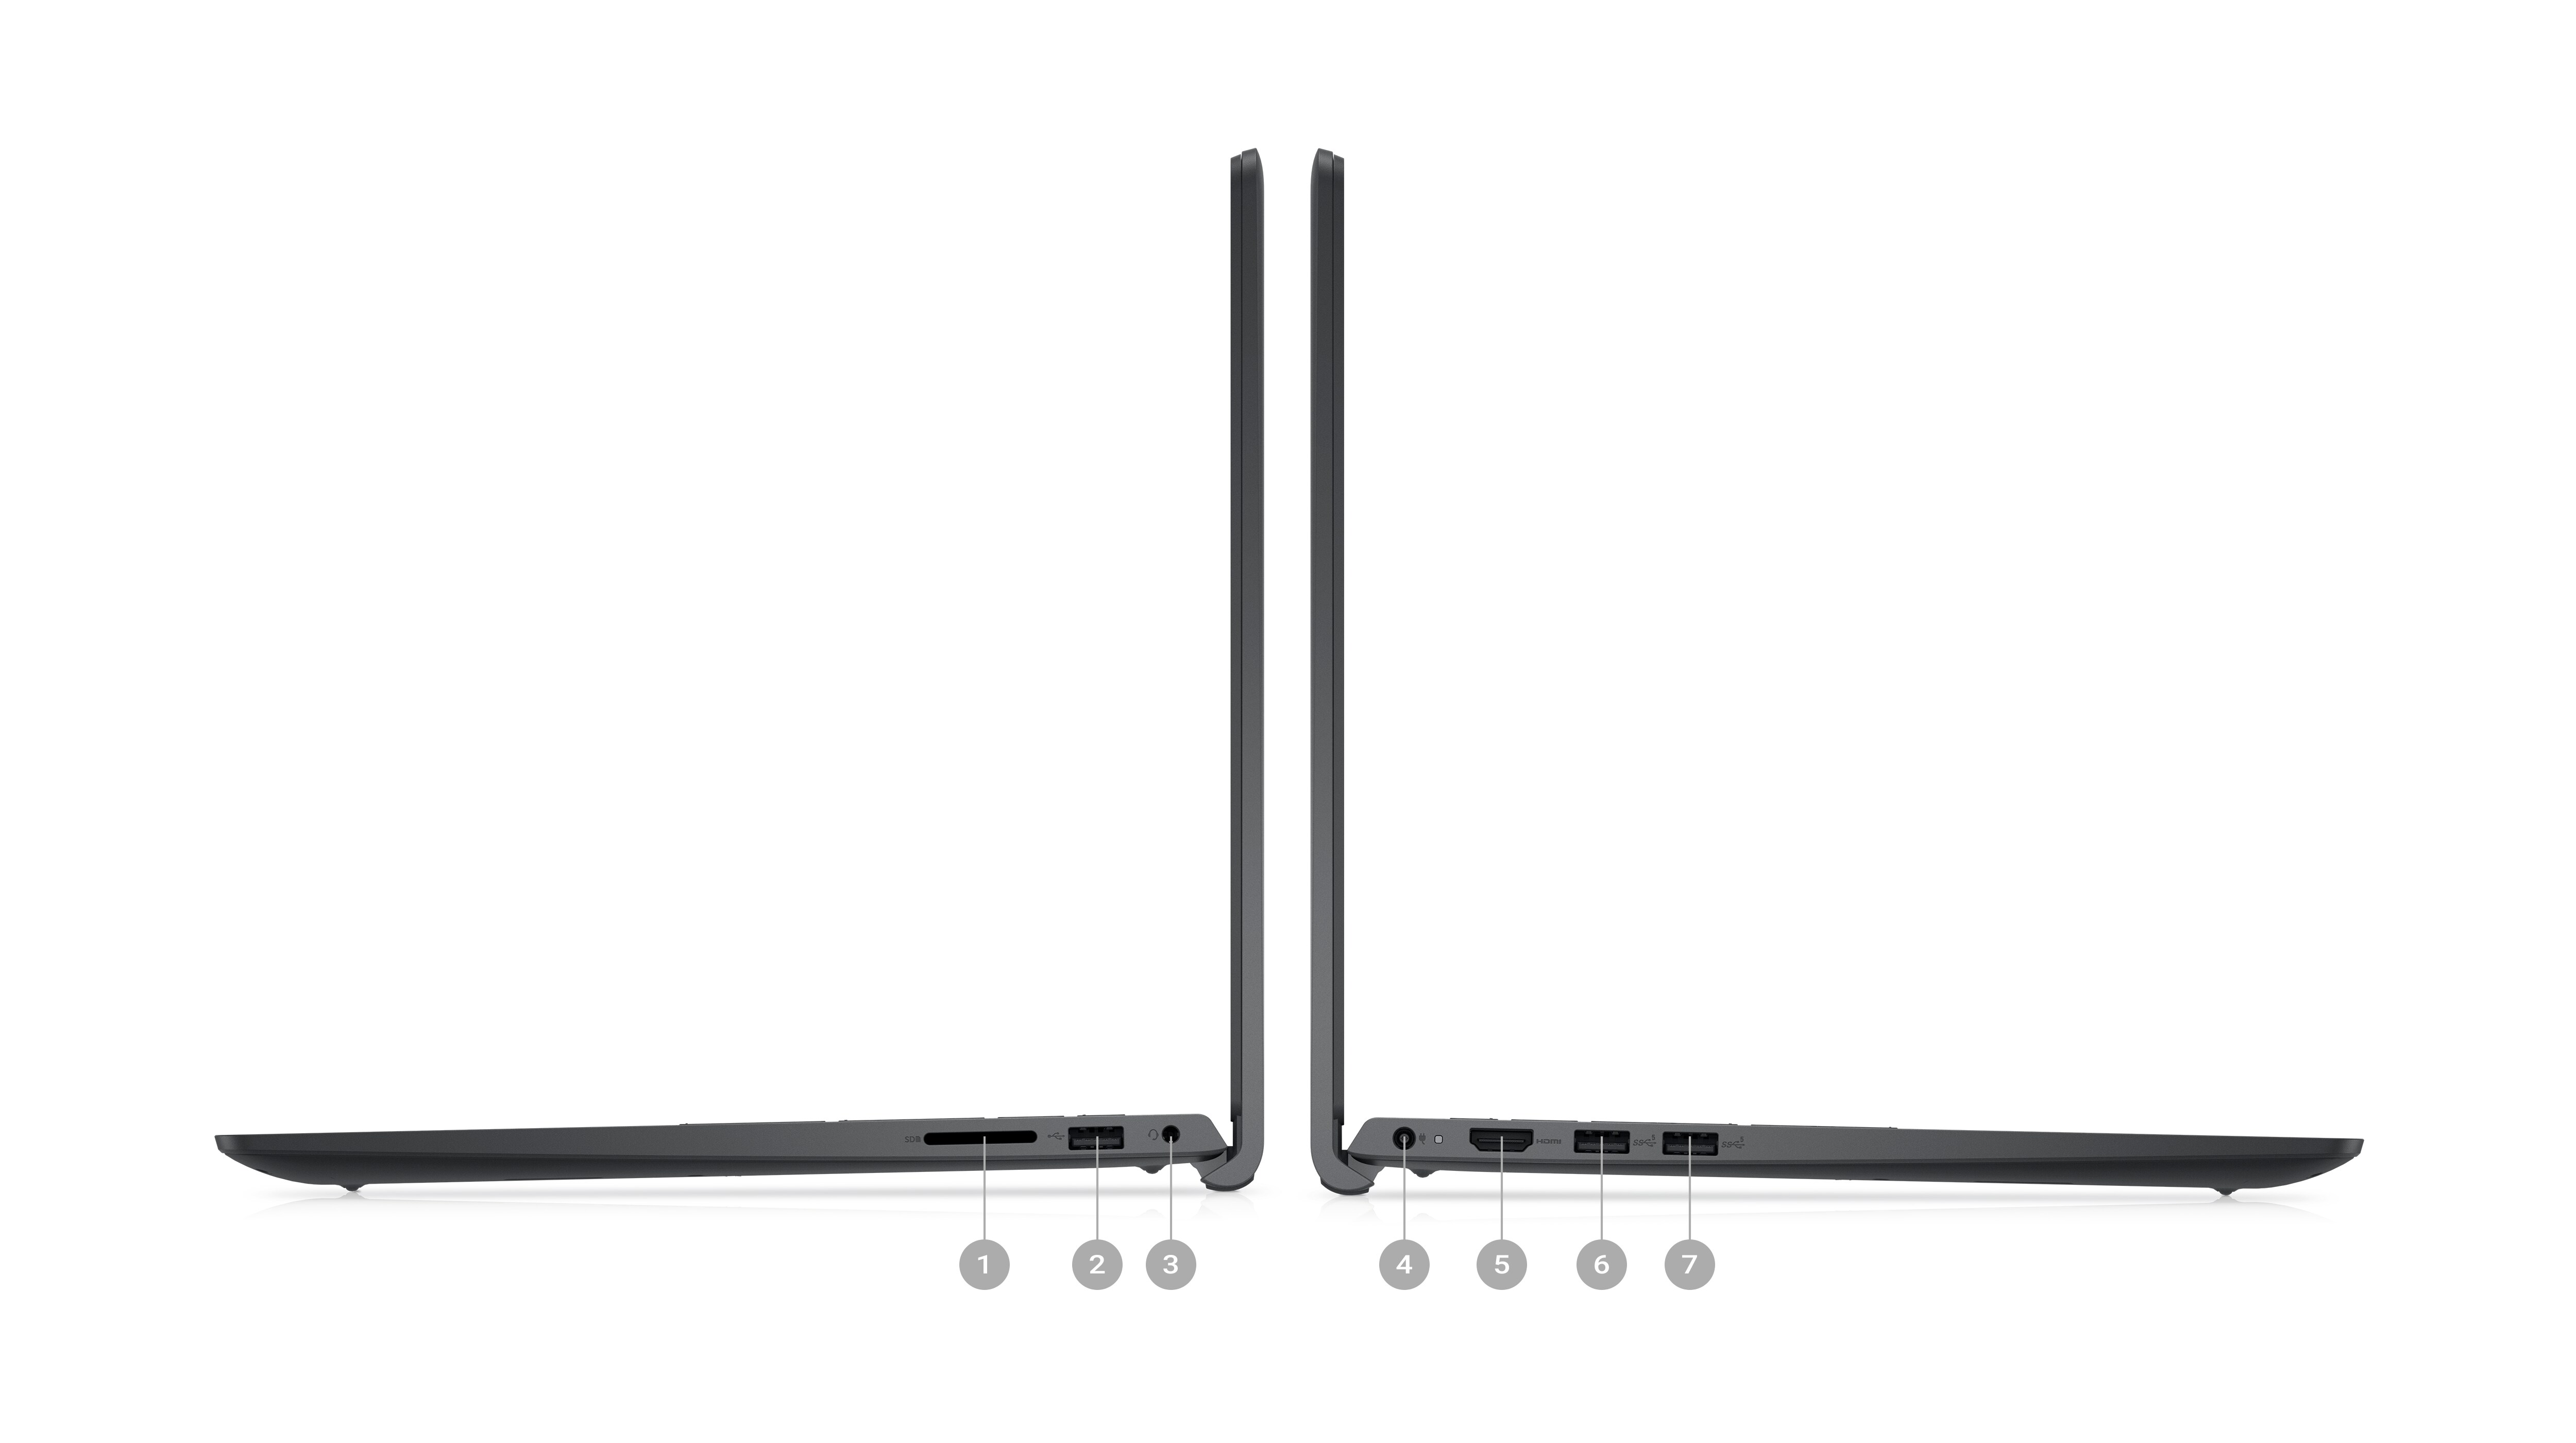 Photo de deux ordinateurs portables Dell Inspiron 15 3521 placés de côté avec les chiffres 1 à 7 indiquant les ports des produits.